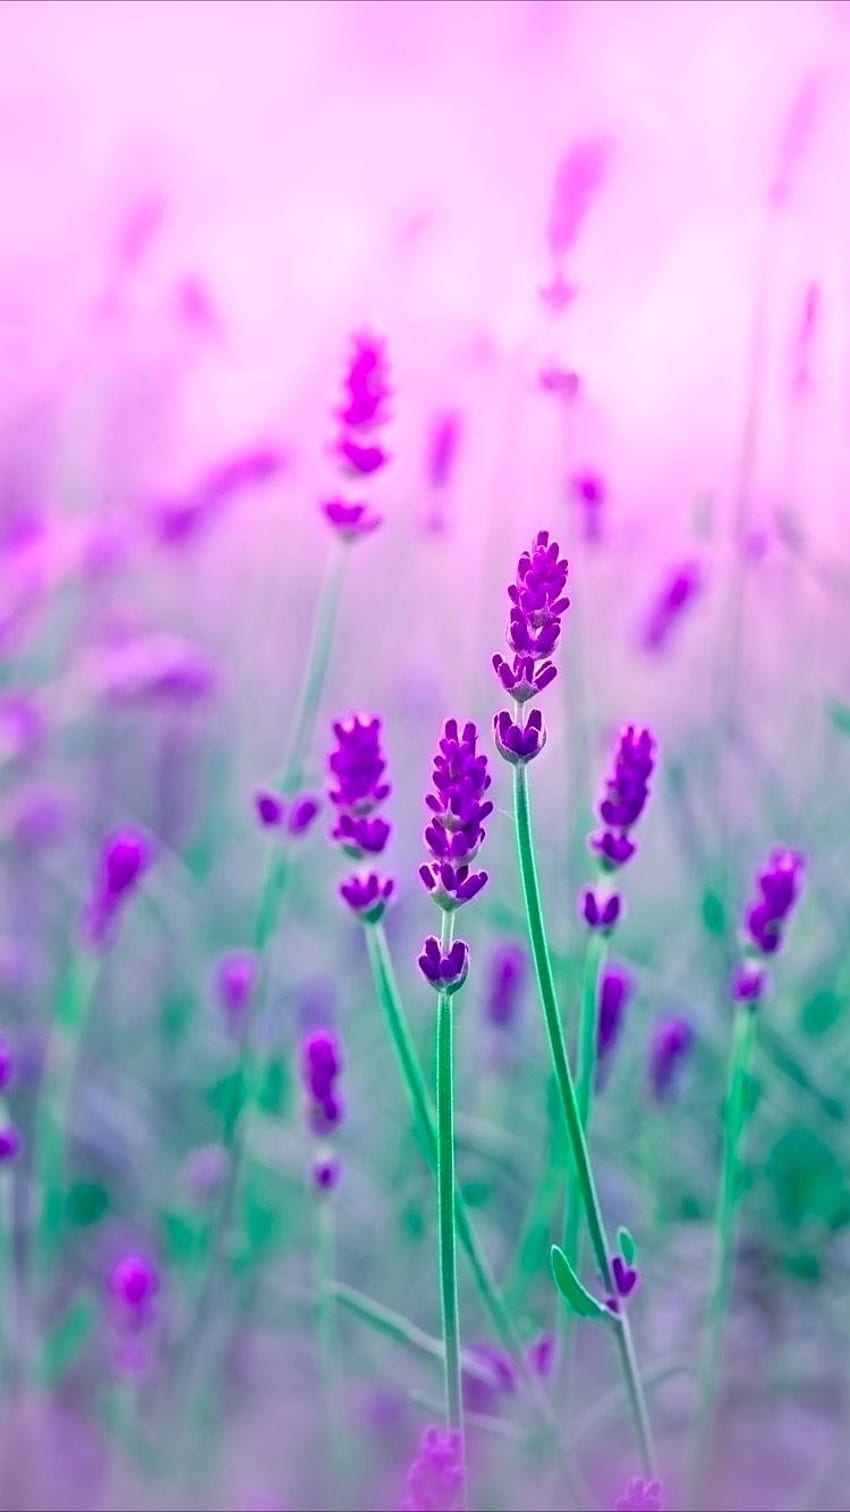 Purple flower in sunny day 2K wallpaper download